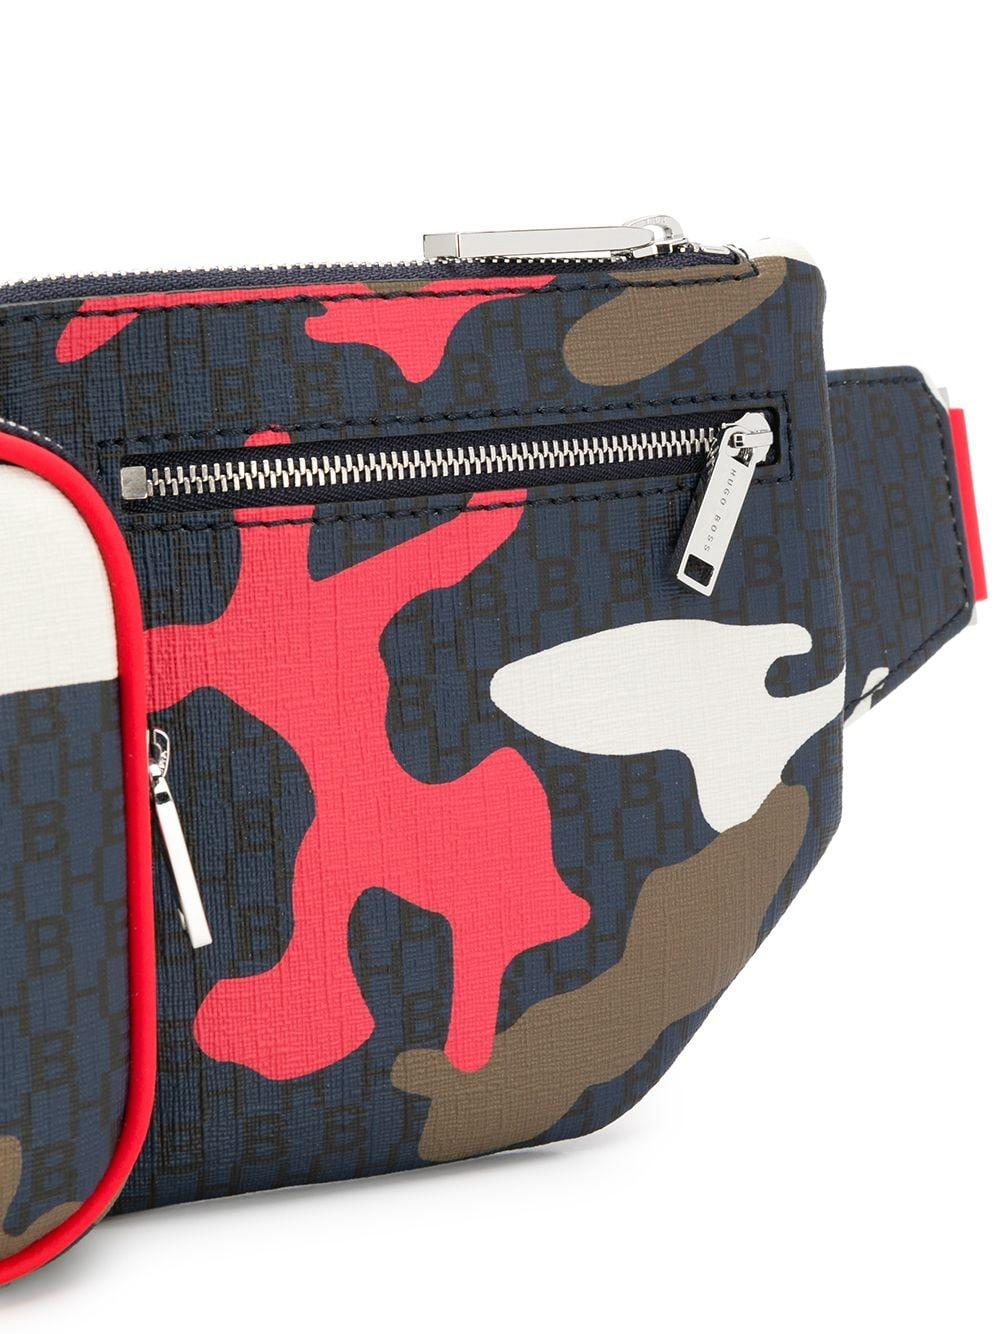 BOSS by HUGO BOSS Camouflage Print Belt Bag for Men | Lyst Australia